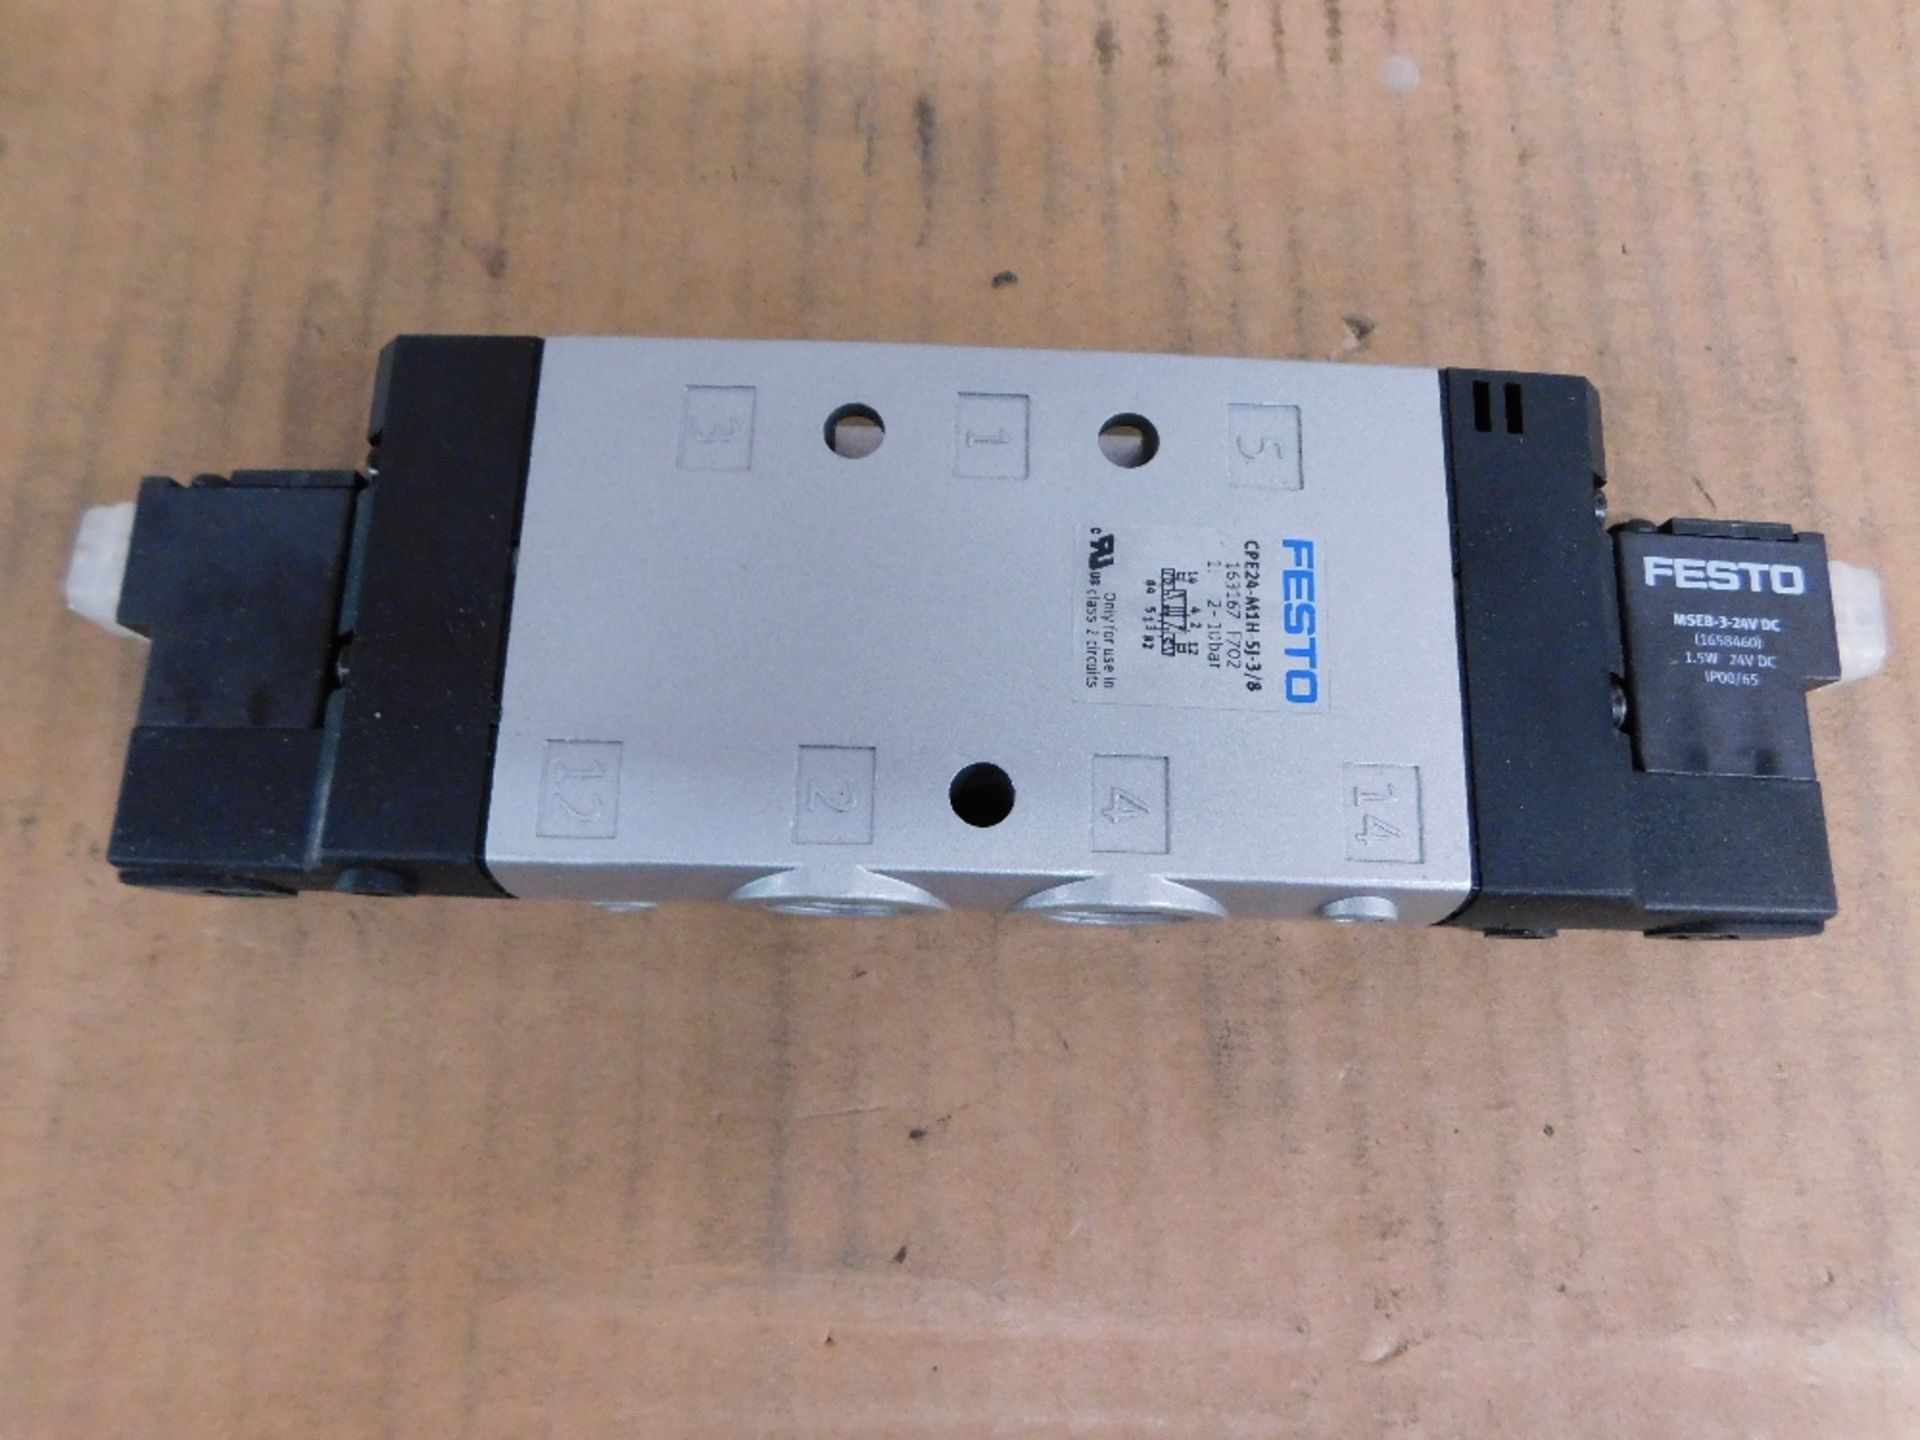 1x Festo Unused Surplus CPE24-M1H-5J-3/8 Misc. Valves Solenoid 24VDC 1.5W - Image 3 of 4